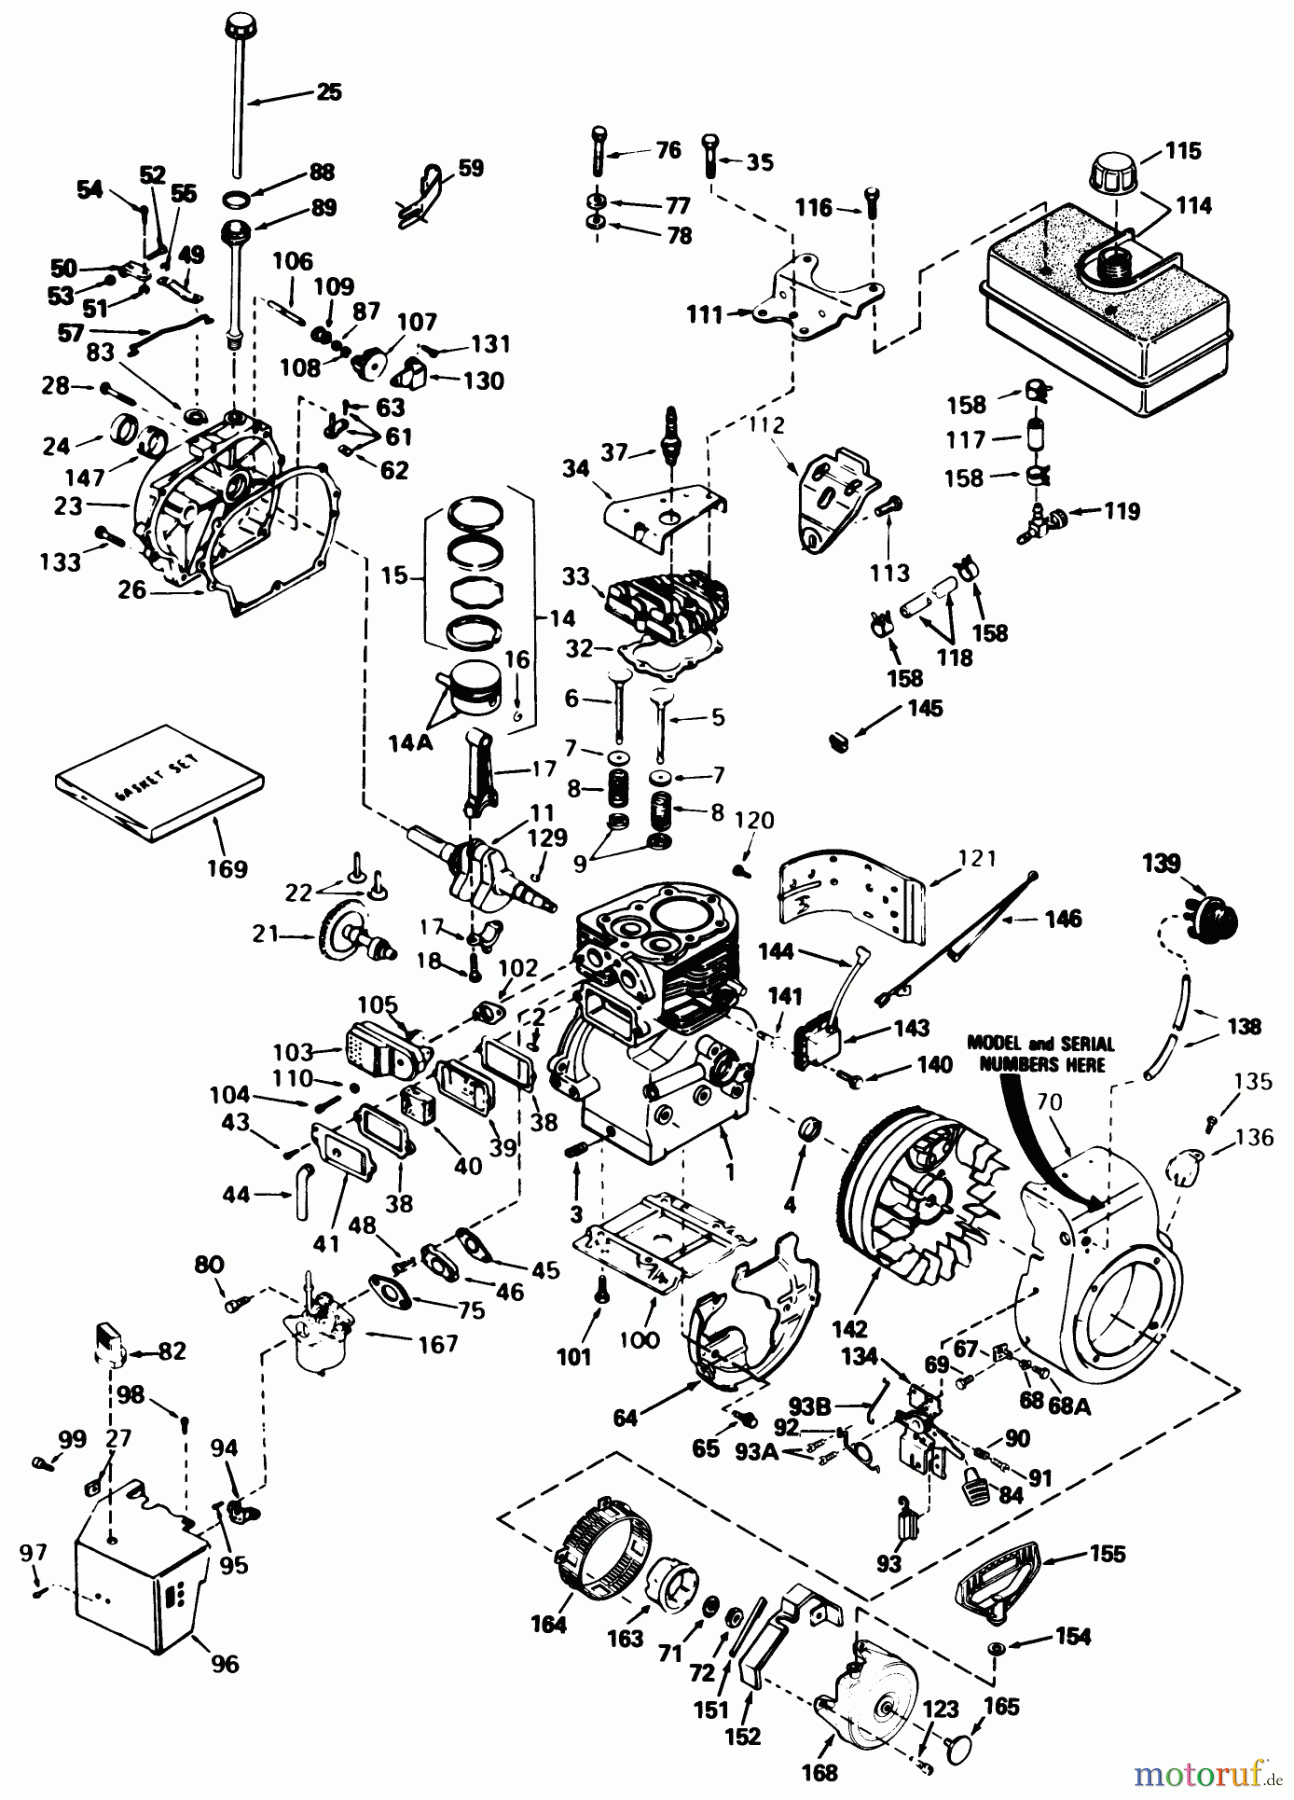  Toro Neu Snow Blowers/Snow Throwers Seite 1 38510 (624) - Toro 624 Power Shift Snowthrower, 1991 (1000001-1999999) ENGINE TECUMSEH MODEL NO. H60-75504W